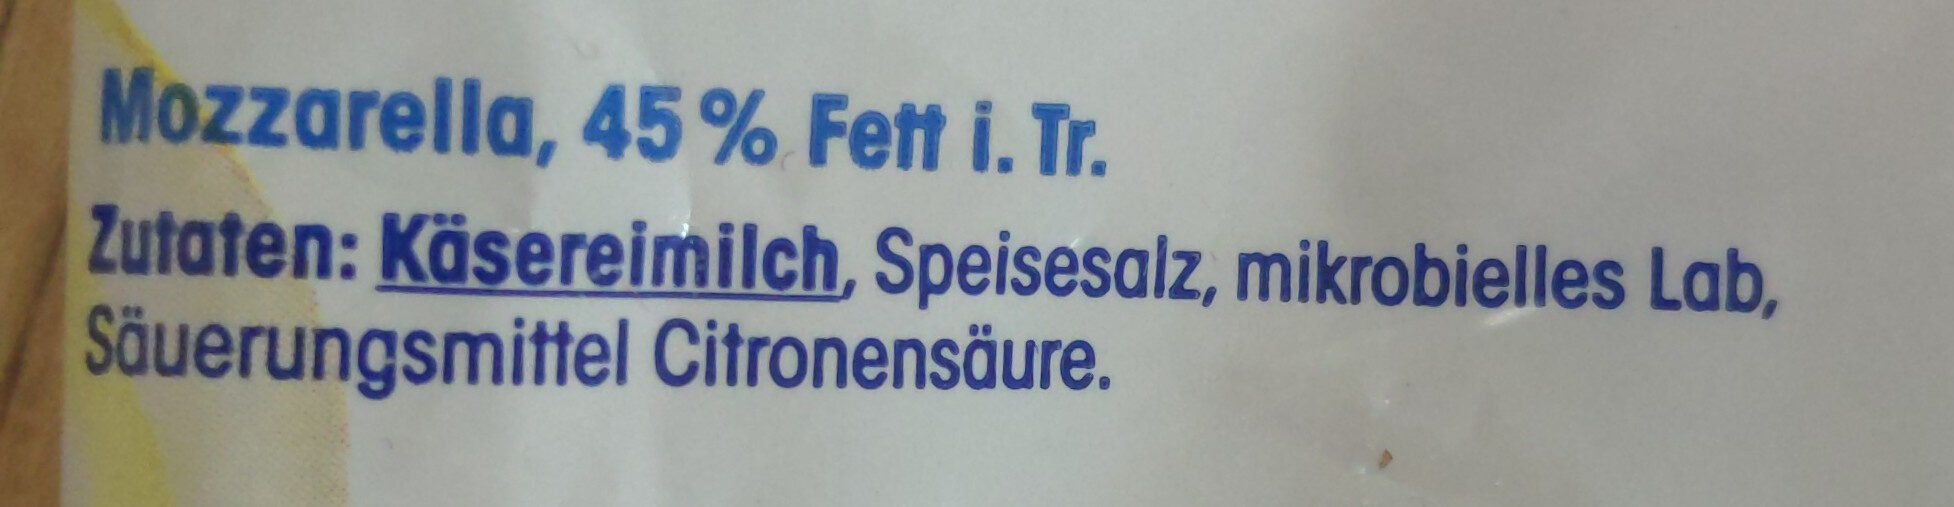 Mozzarella, 45% Fett i. Tr. - Ingredients - de